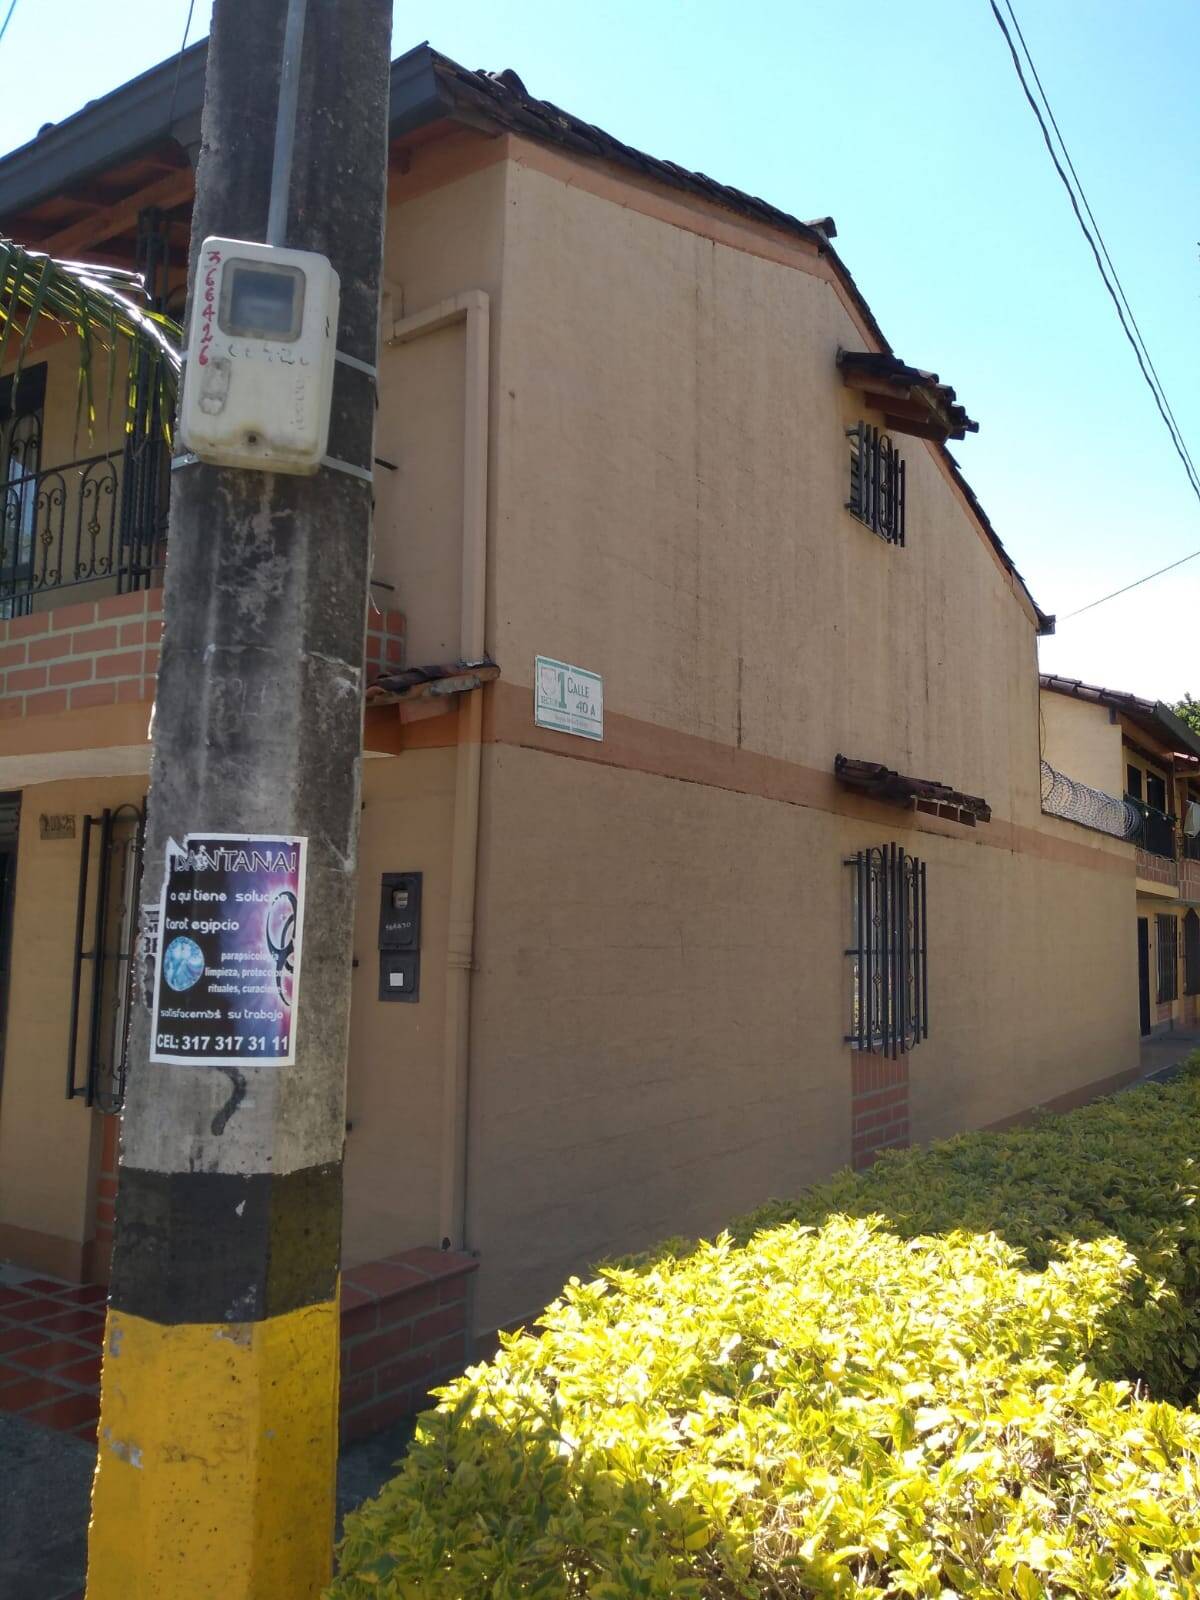 #2425 - Casa para Venta en Rionegro - ANT